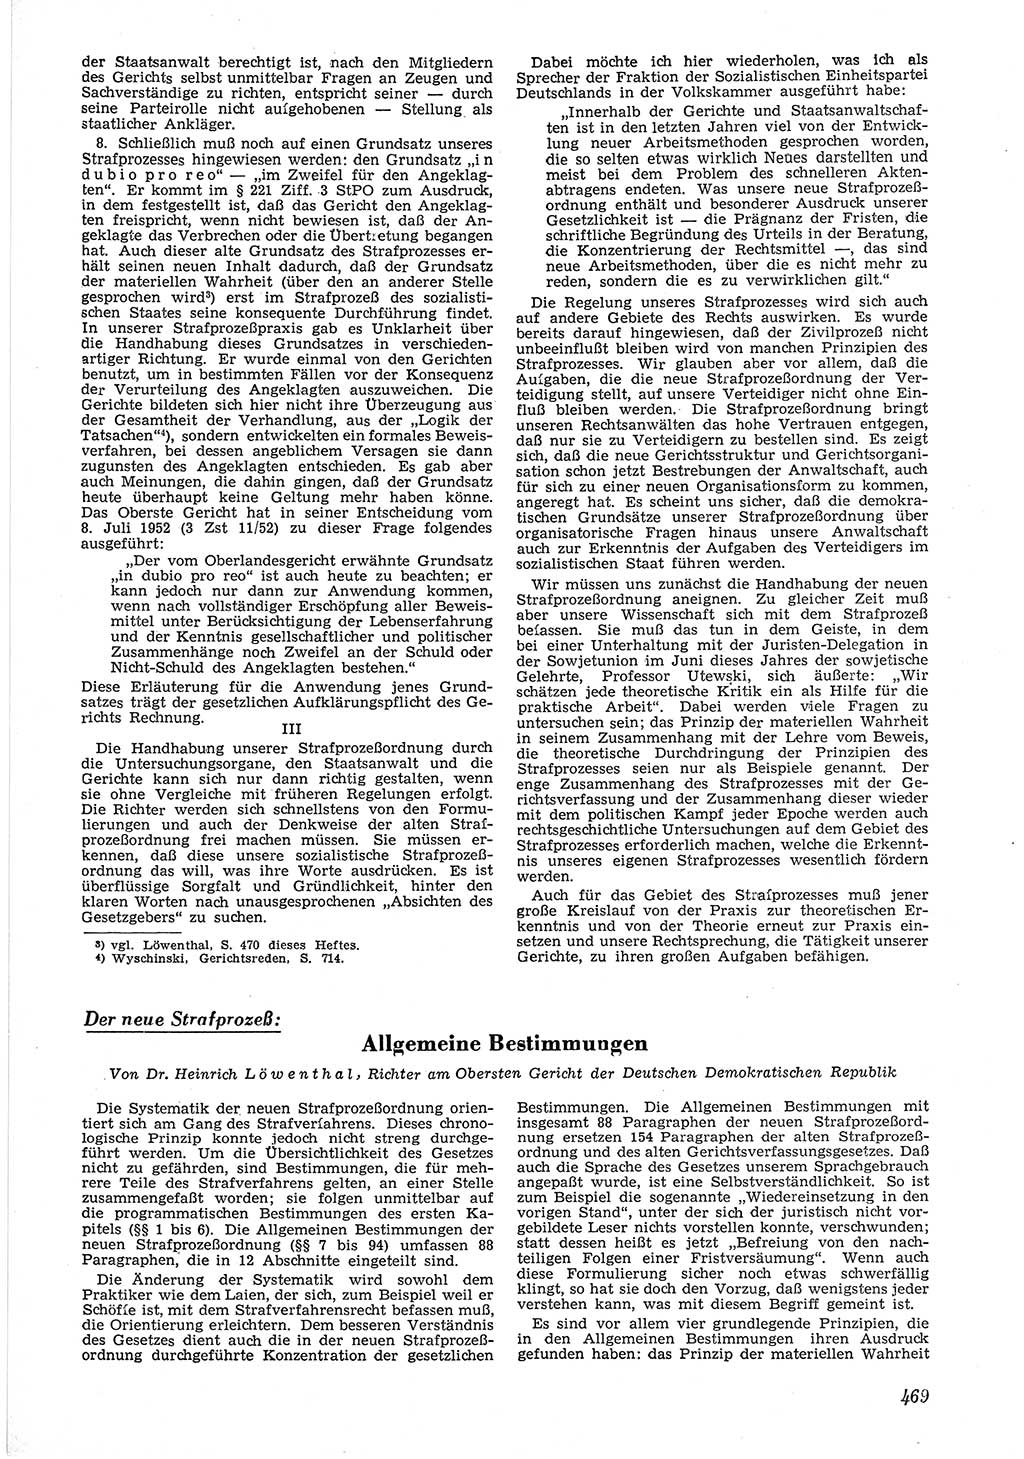 Neue Justiz (NJ), Zeitschrift für Recht und Rechtswissenschaft [Deutsche Demokratische Republik (DDR)], 6. Jahrgang 1952, Seite 469 (NJ DDR 1952, S. 469)